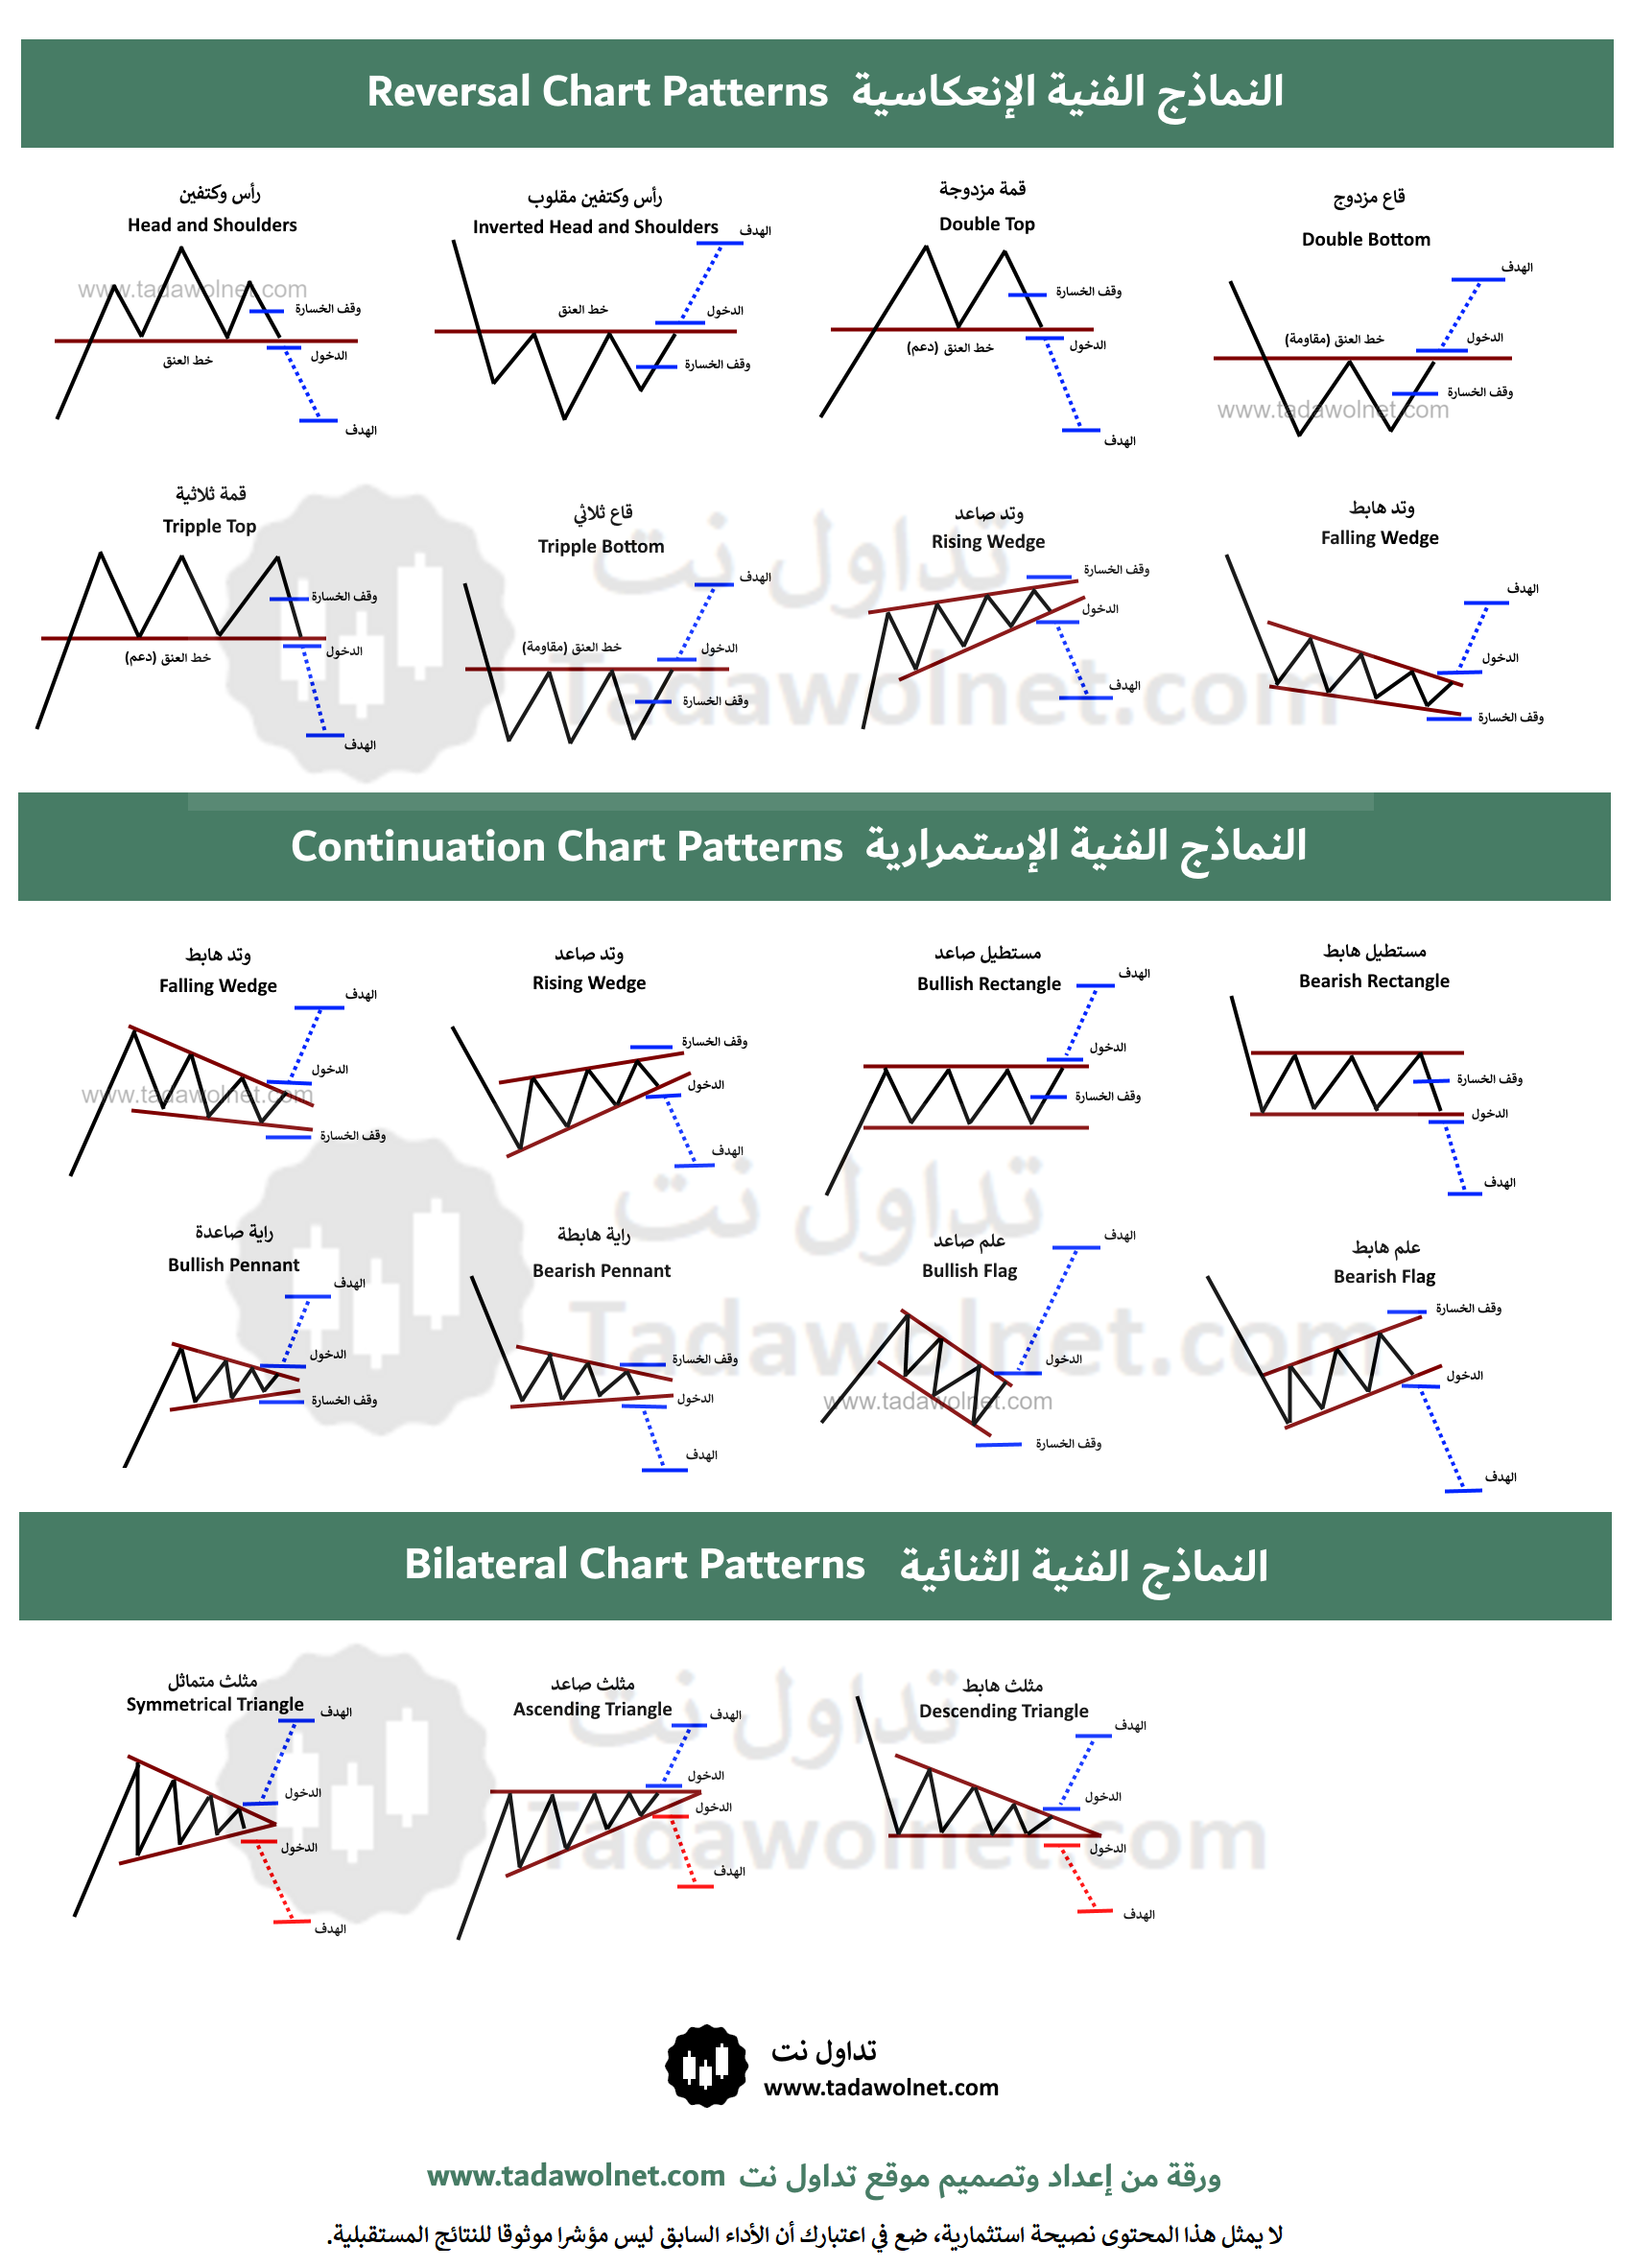 ملخص النماذج الفنية الكلاسيكية (Chart patterns cheat sheet)